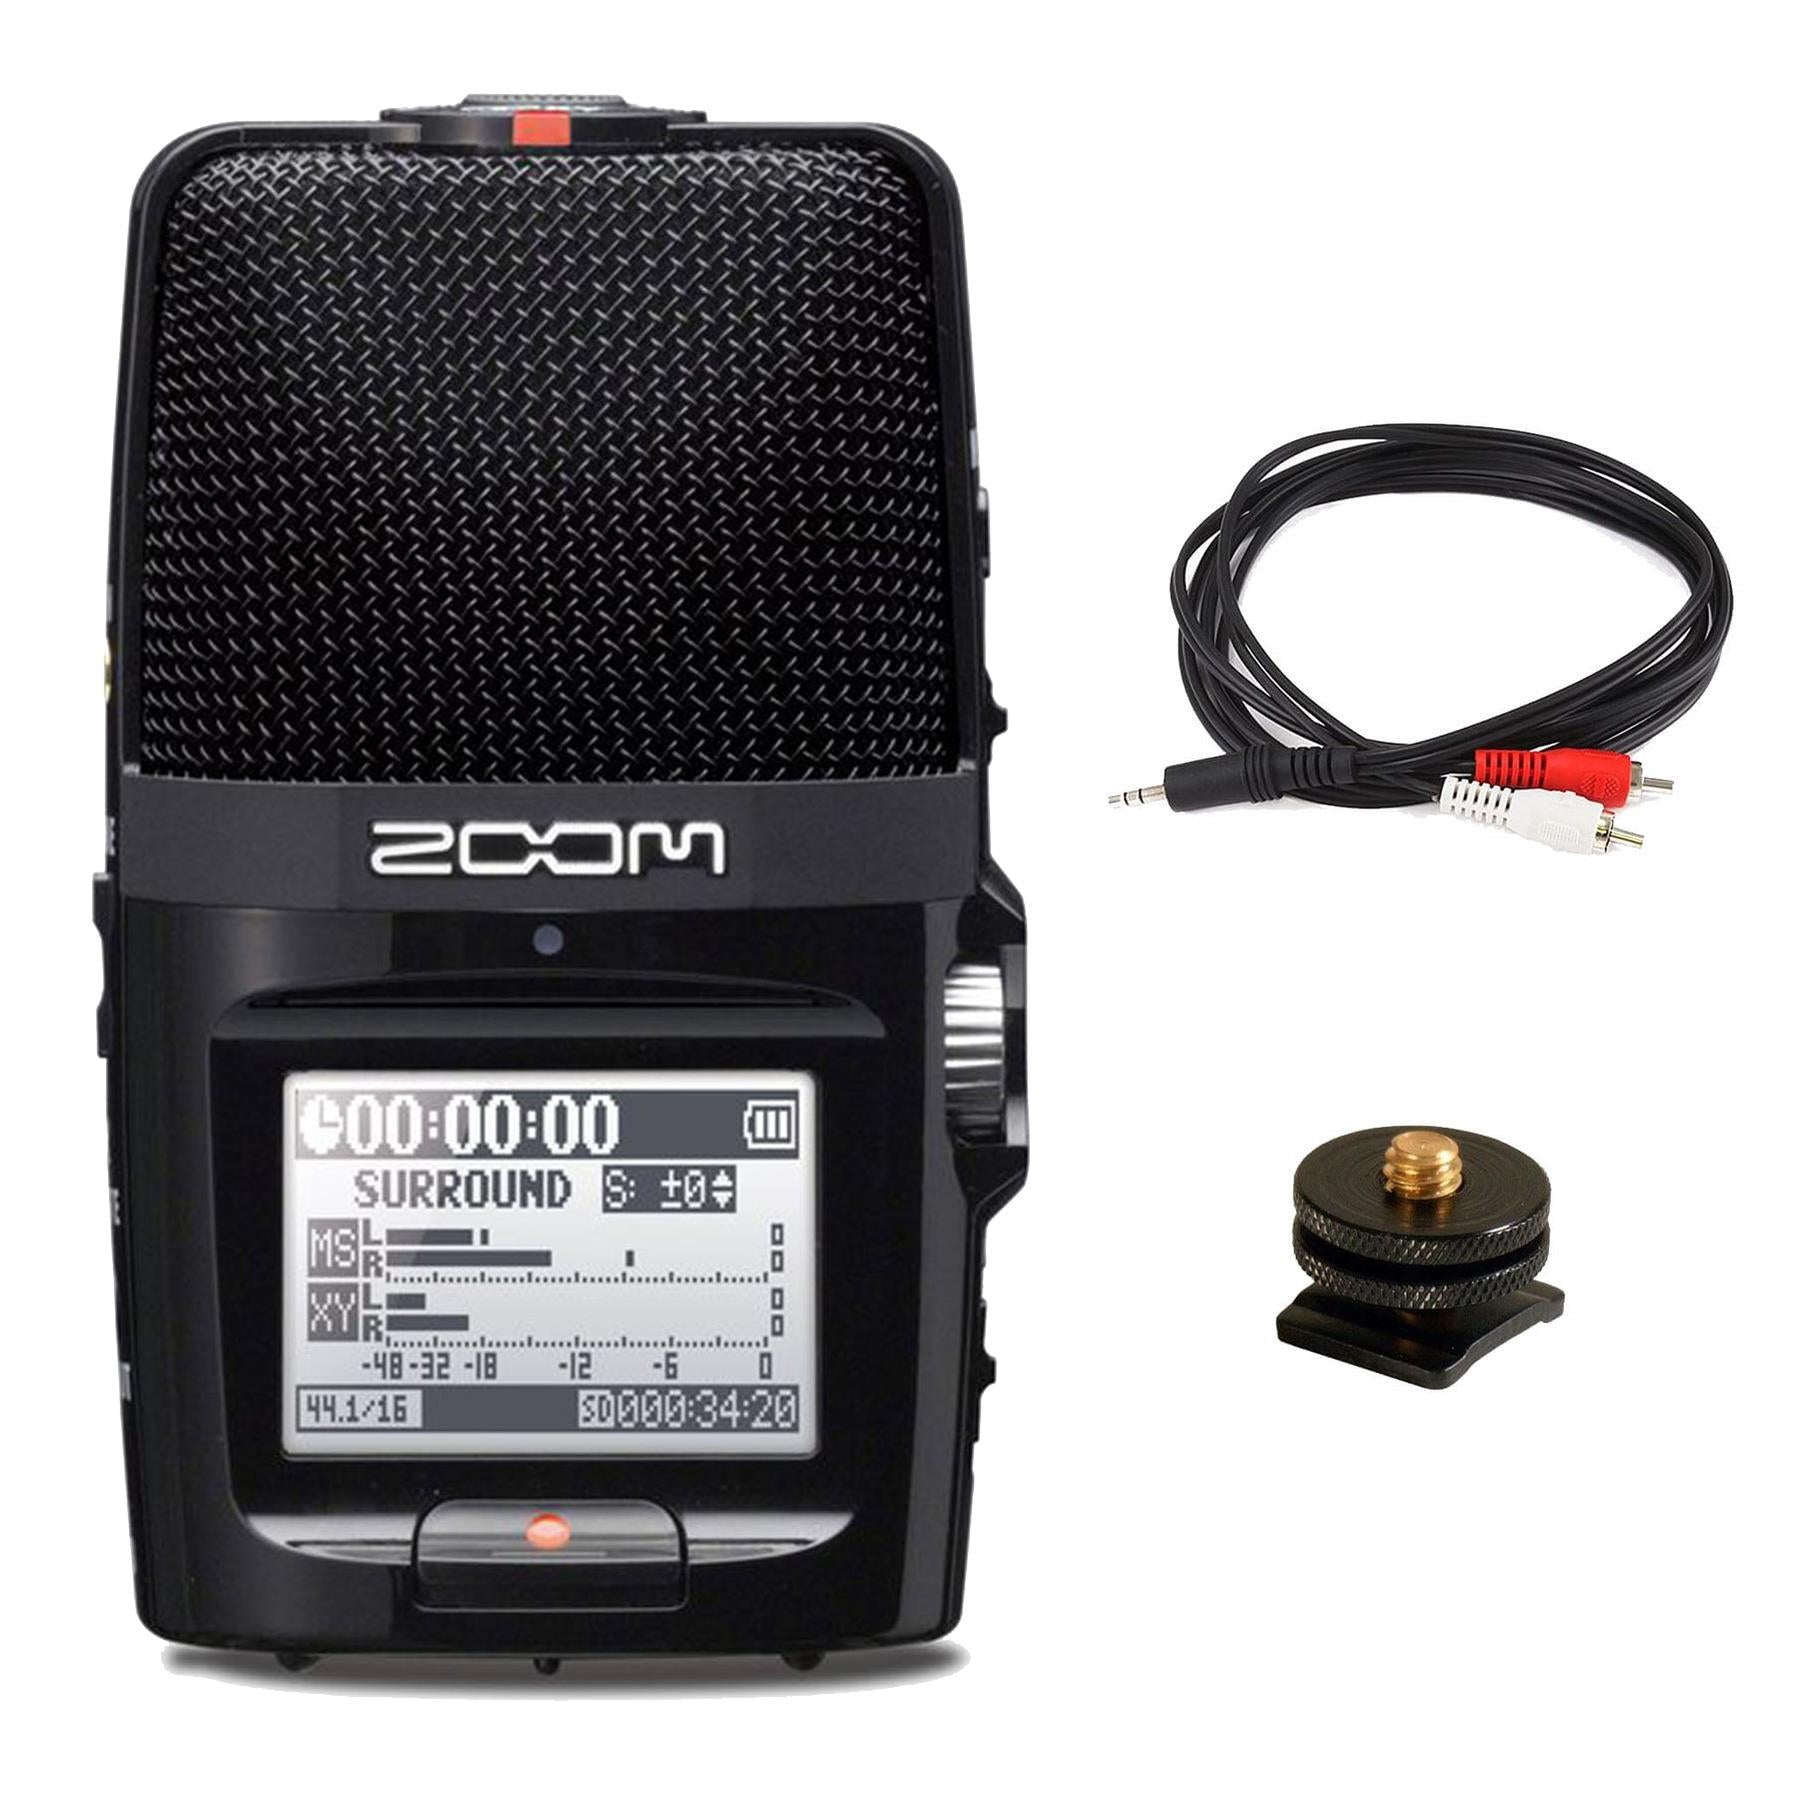 Zoom H2n Recorder Bundle with 1/8